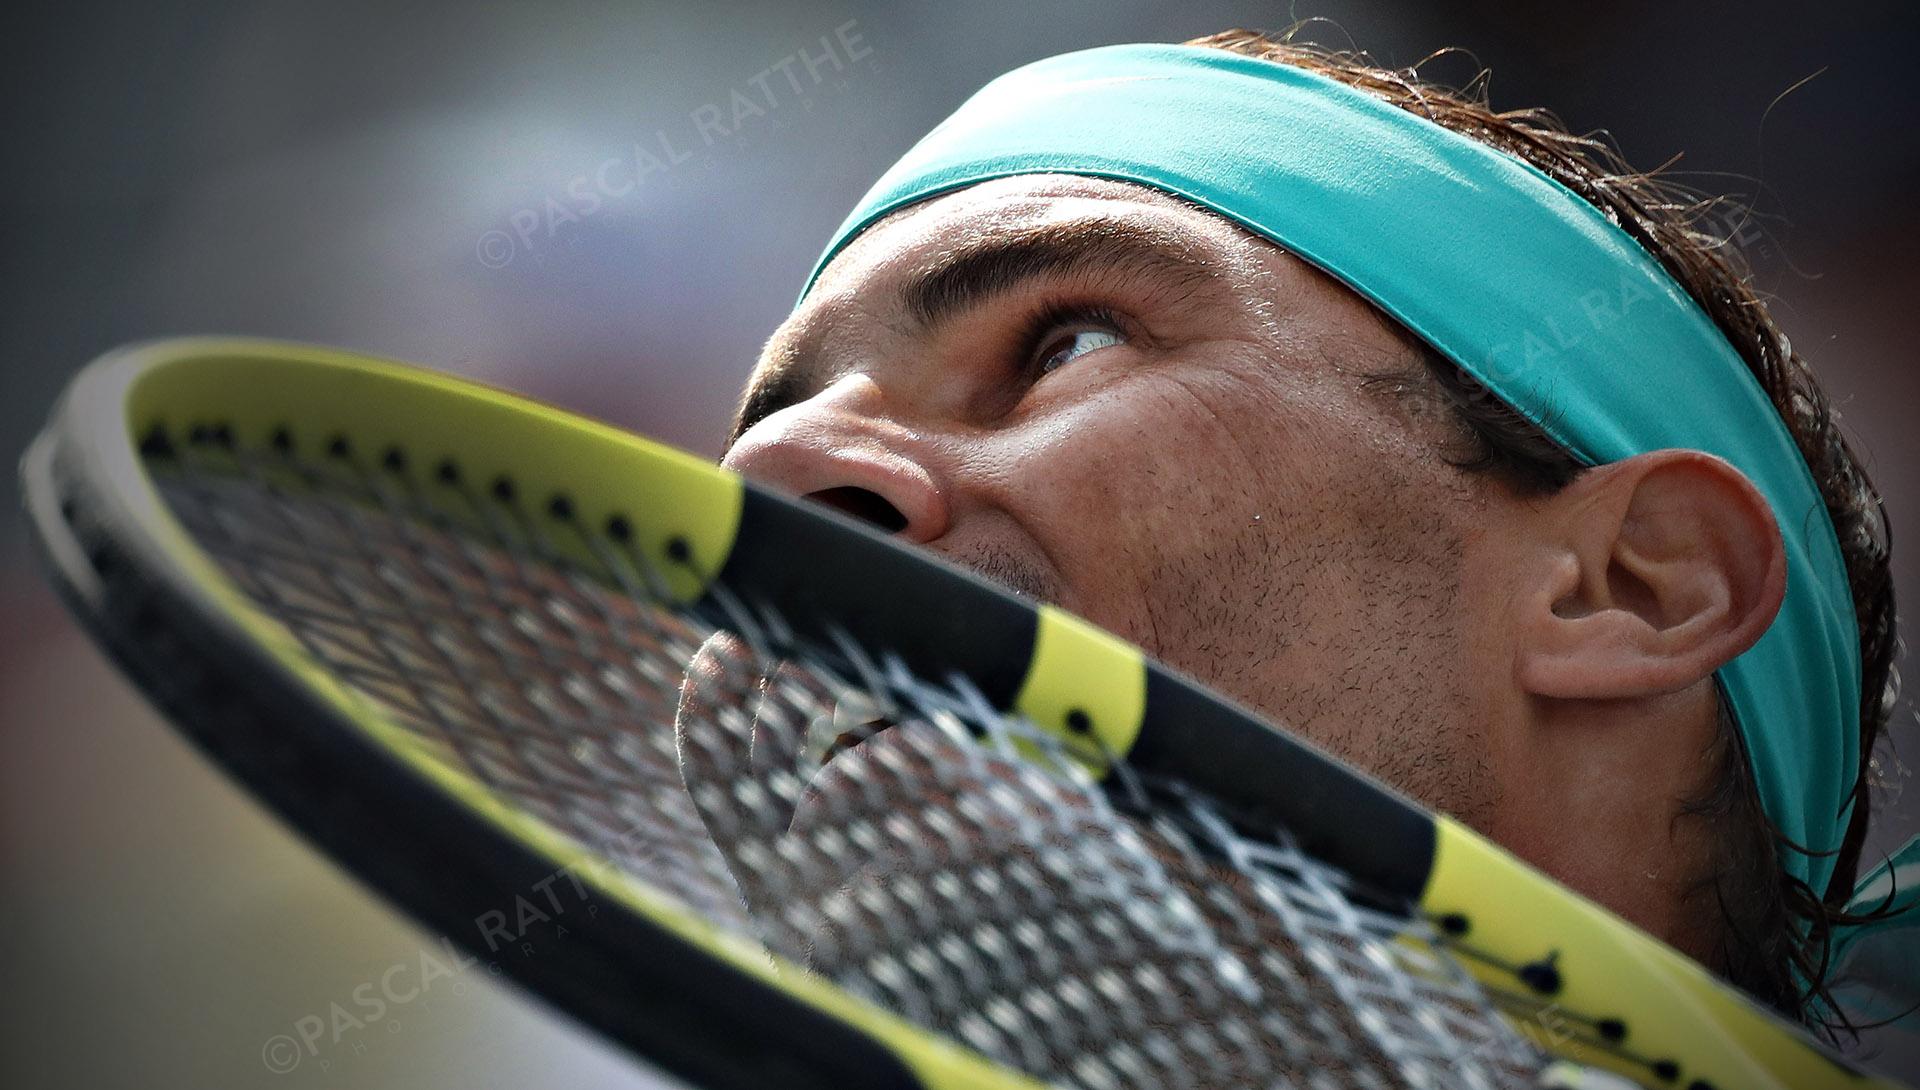 Rafael Nadal est un joueur de tennis espagnol à la coupe rogers 2019